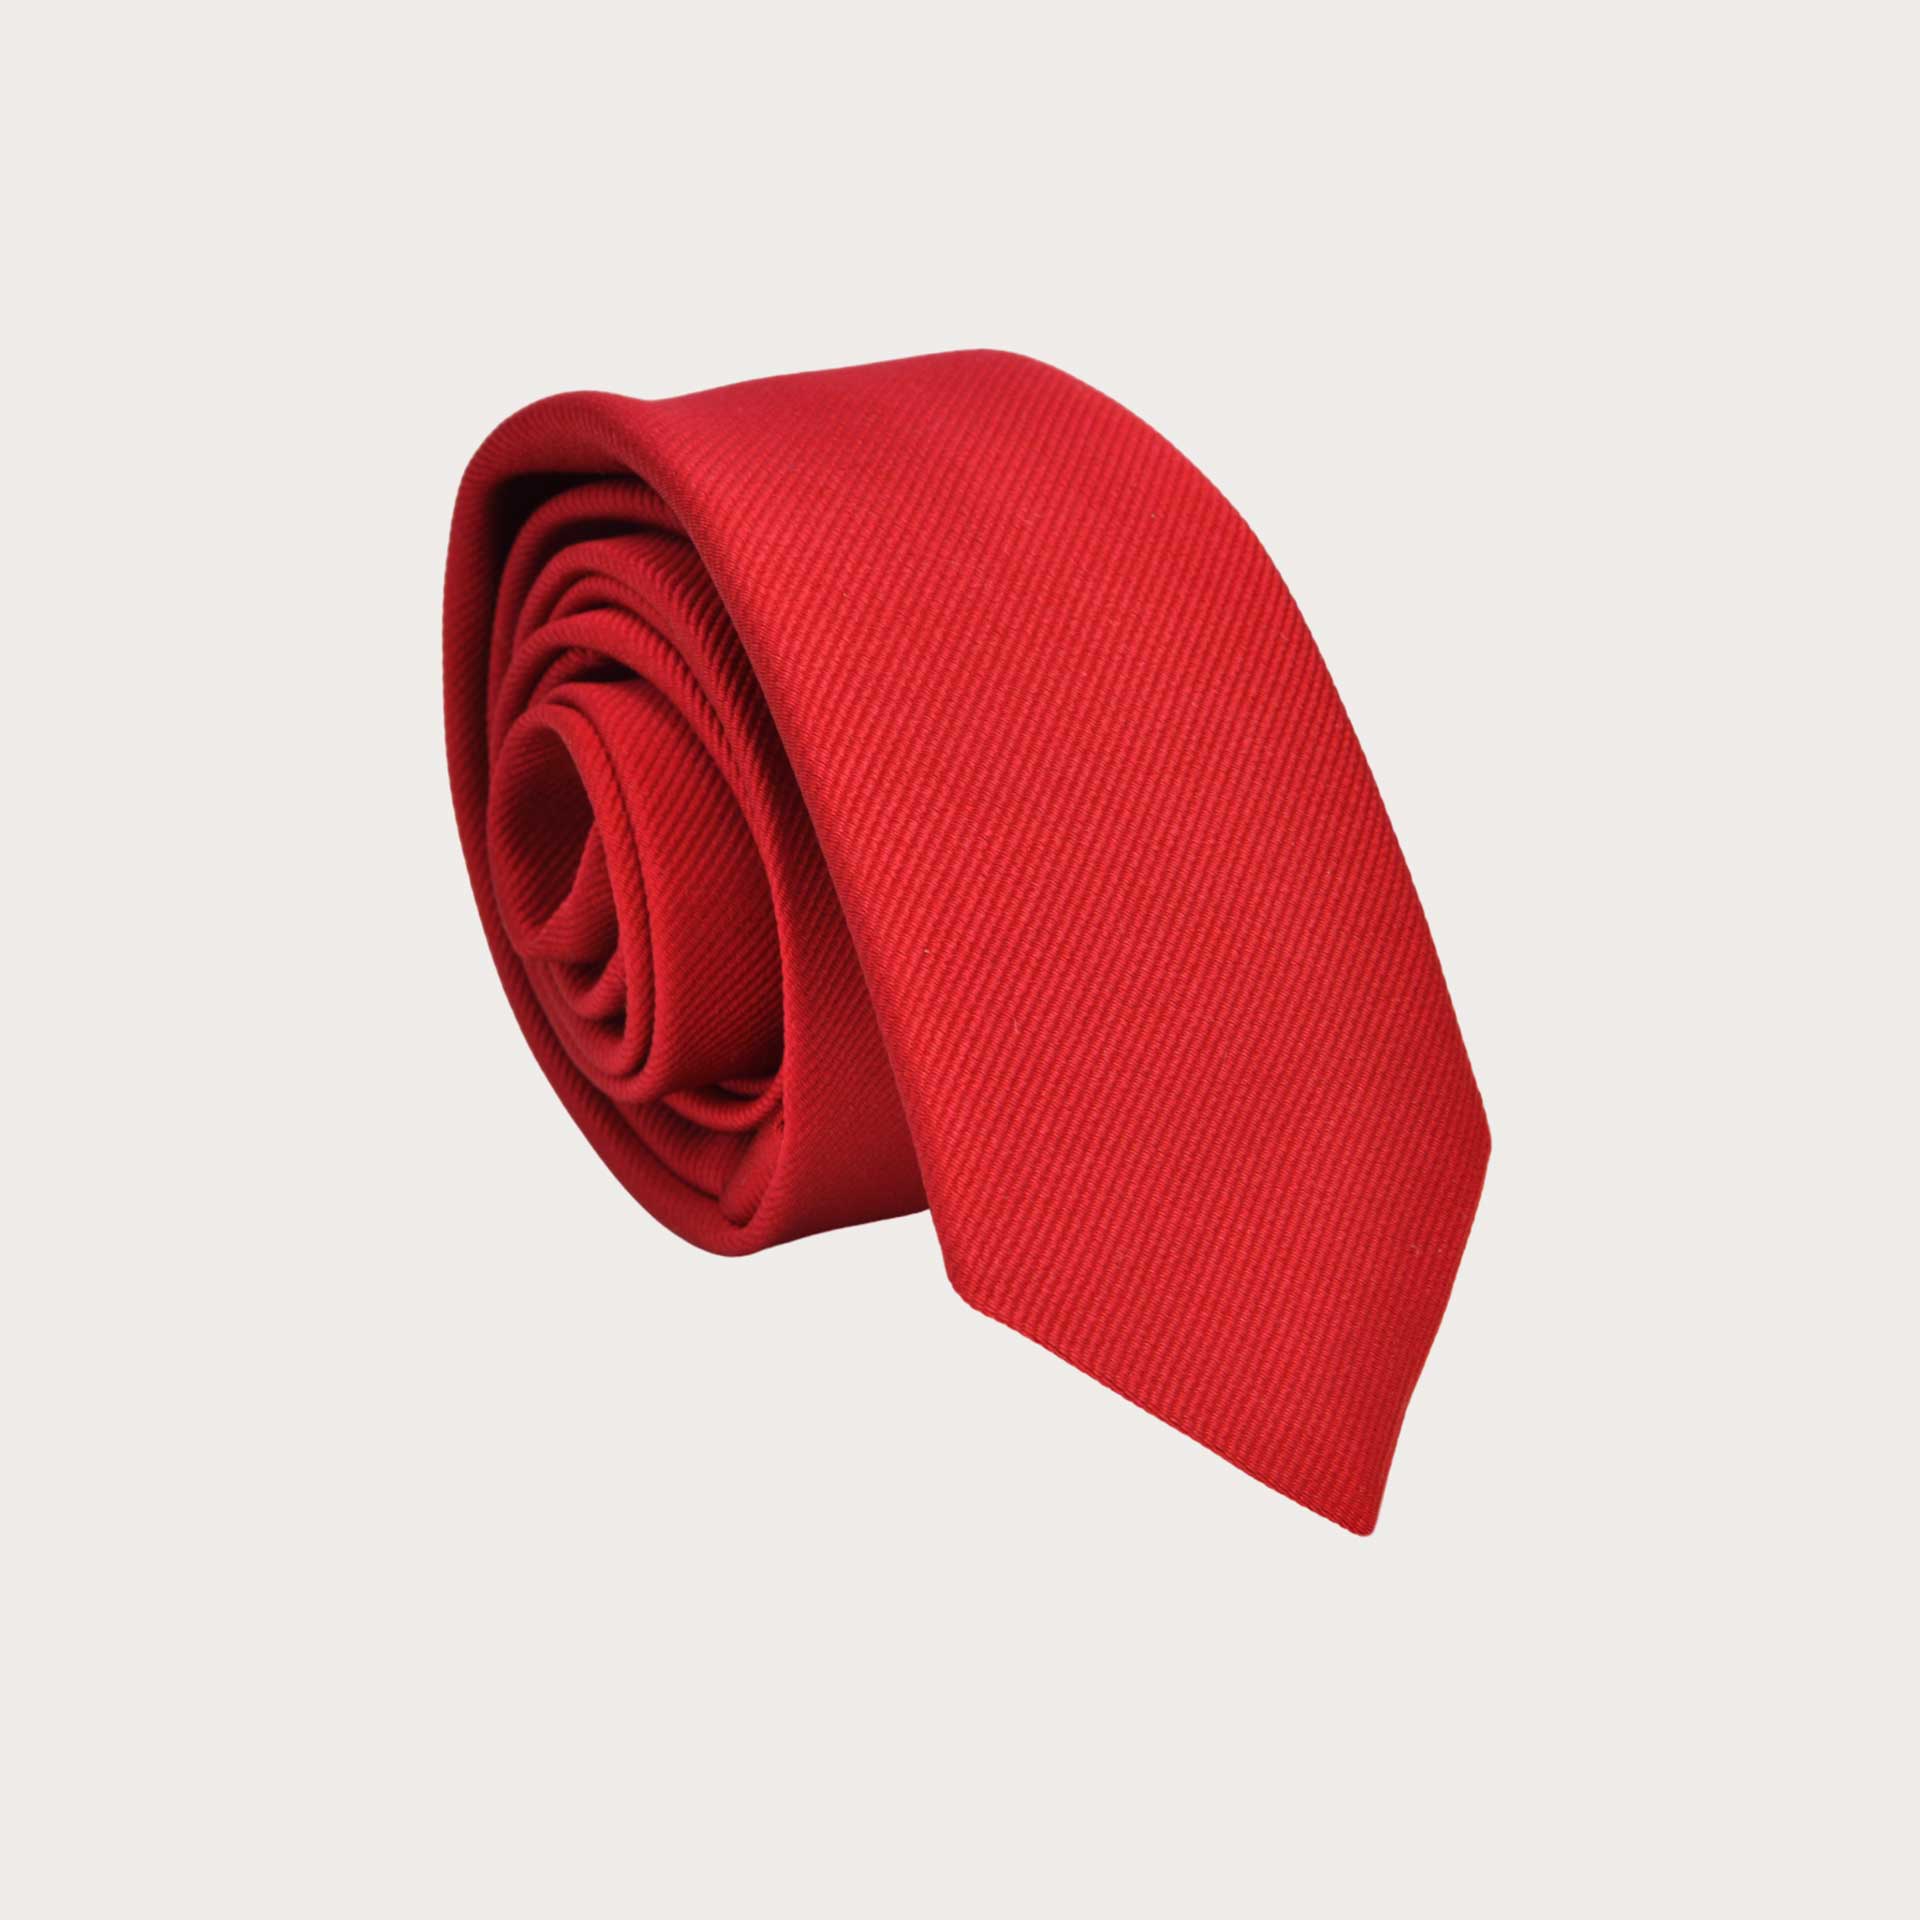 Corbata estrecha de seda roja